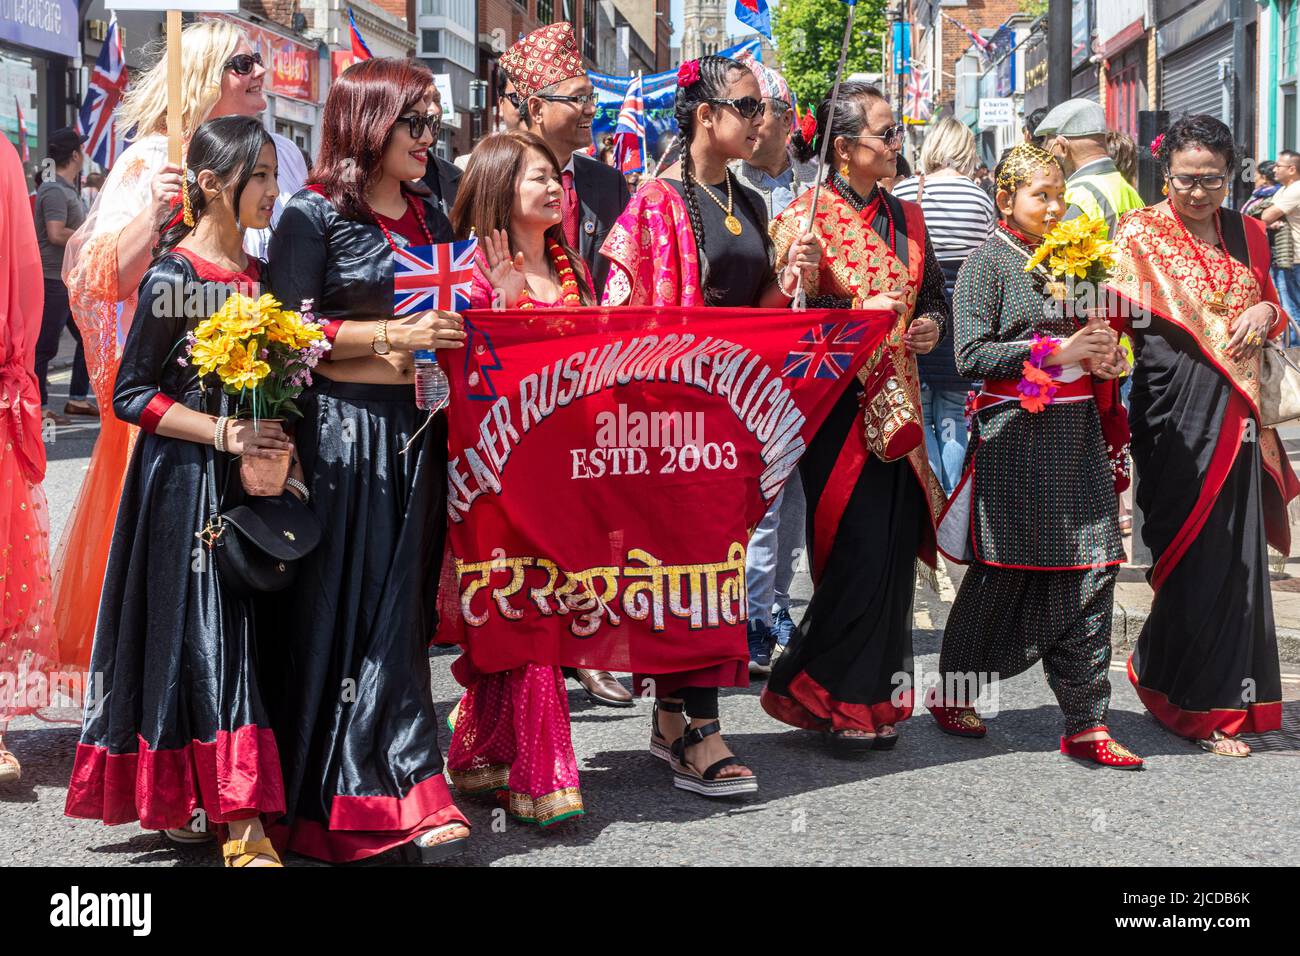 Communauté népalaise du Grand Rushmoor dans le Grand Parade à la fête de Victoria, un événement annuel à Aldershot, Hampshire, Angleterre, Royaume-Uni Banque D'Images